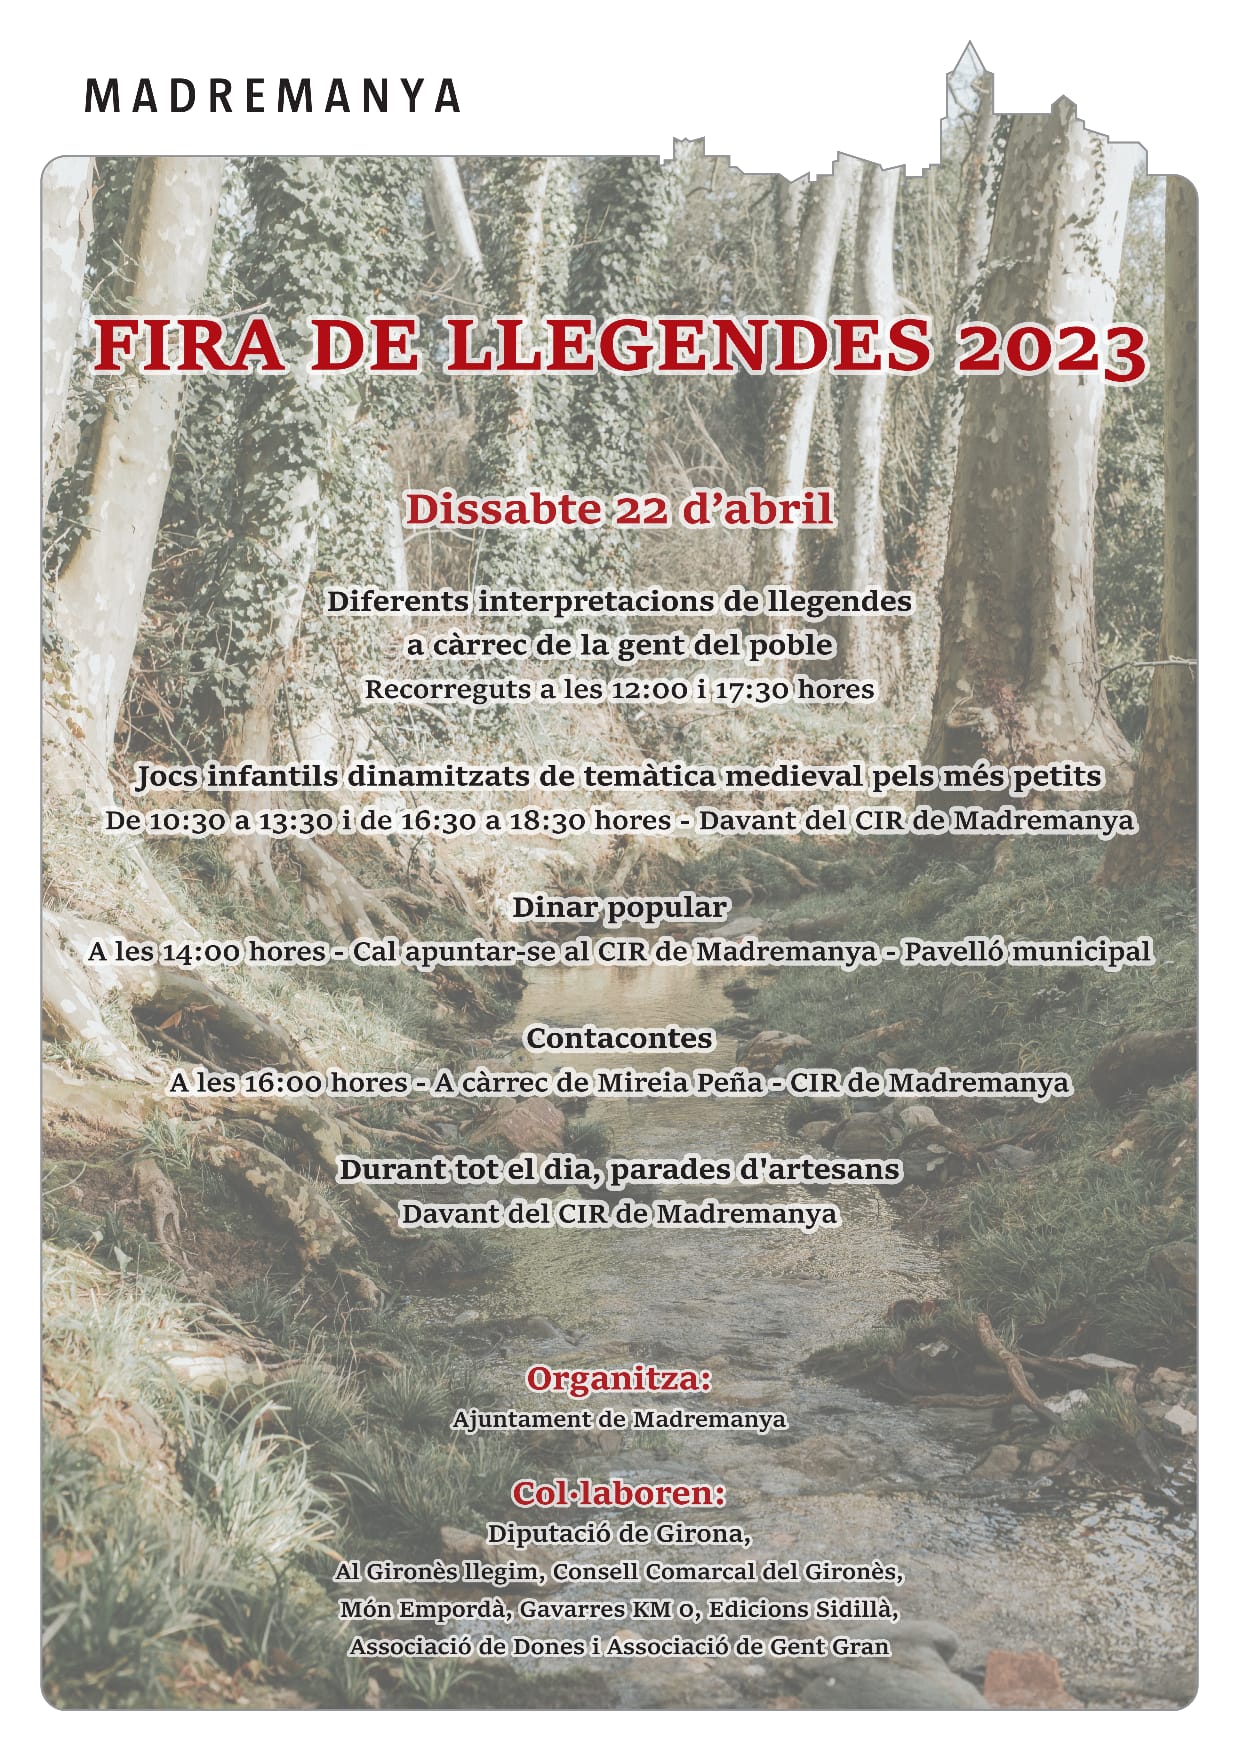 FIRA DE LLEGENDES 2023